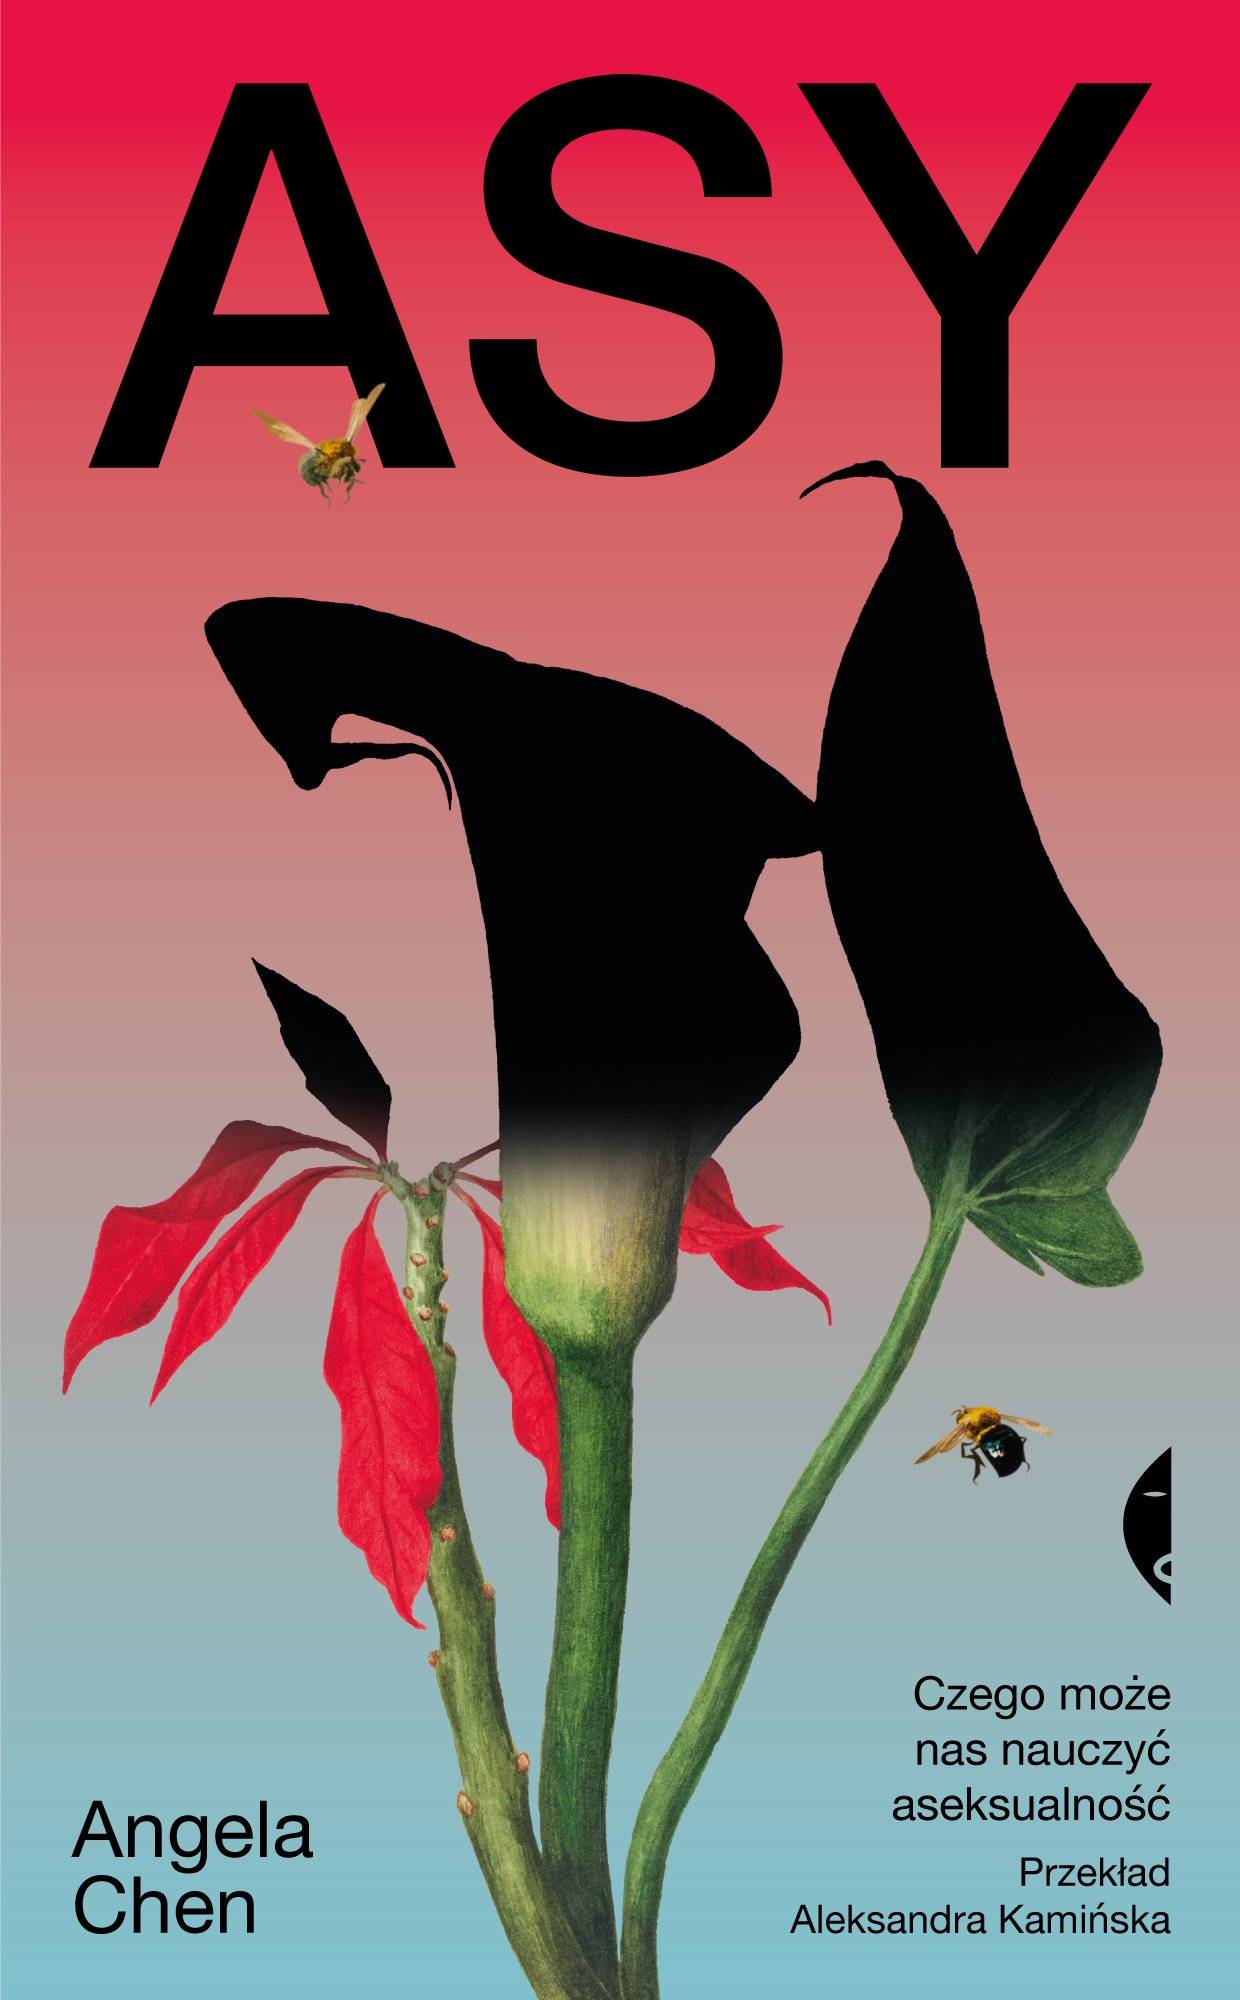 Okładka książki Angeli Chan „Asy”, z rysunkiem kwiatów ciemniejących o góry